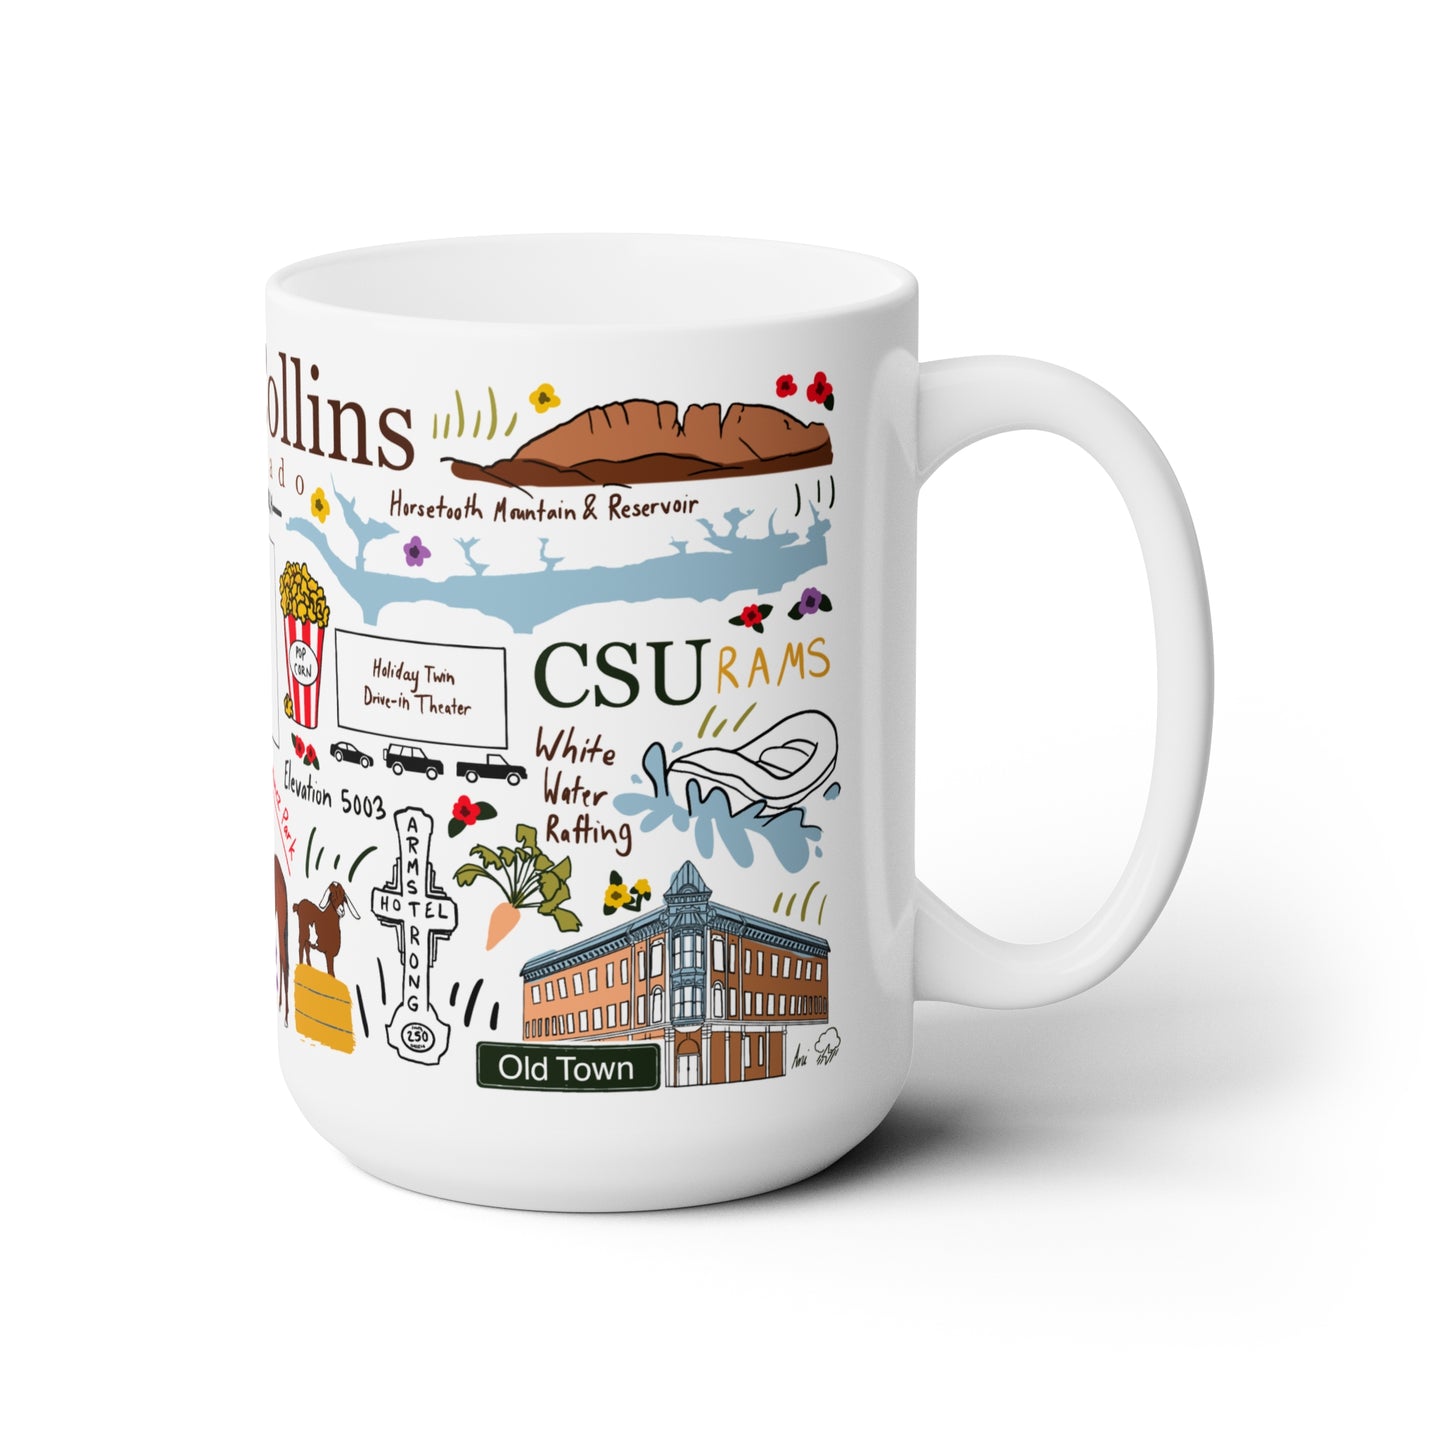 Fort Collins, Colorado - Ceramic Mug 15oz